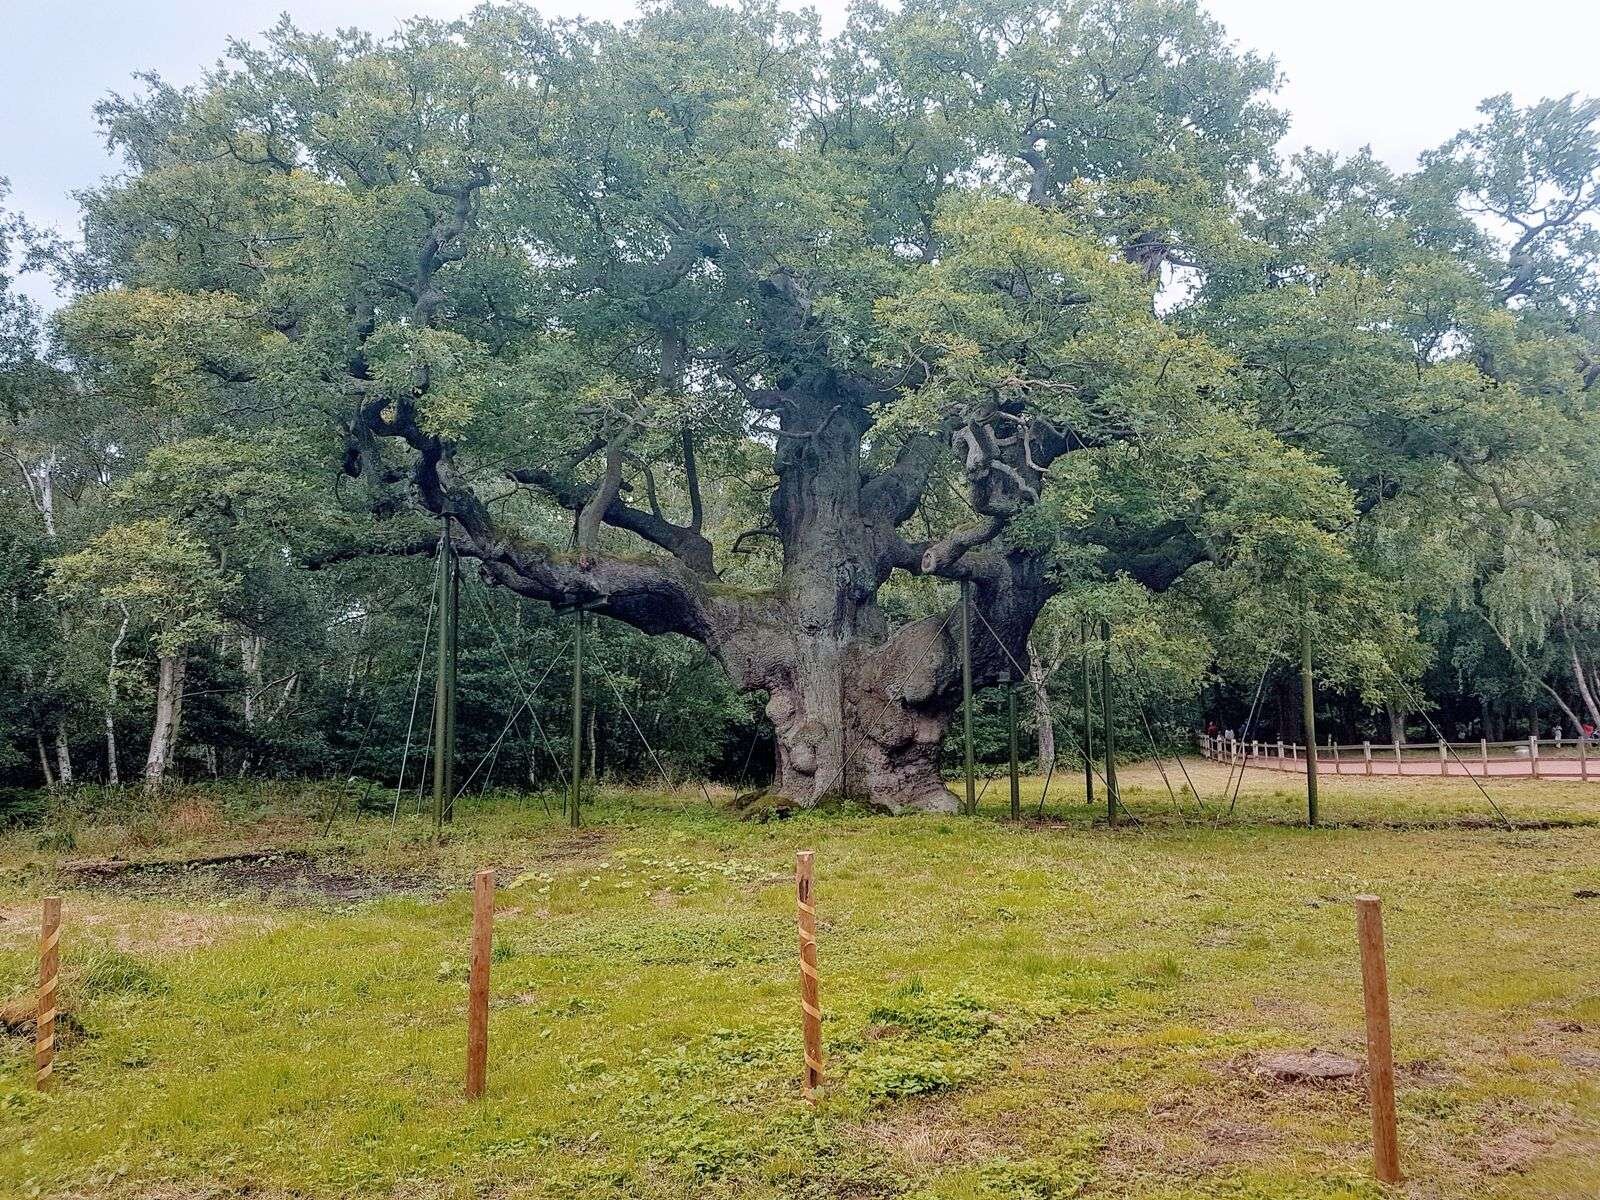 Major Oak, Sherwood Forest